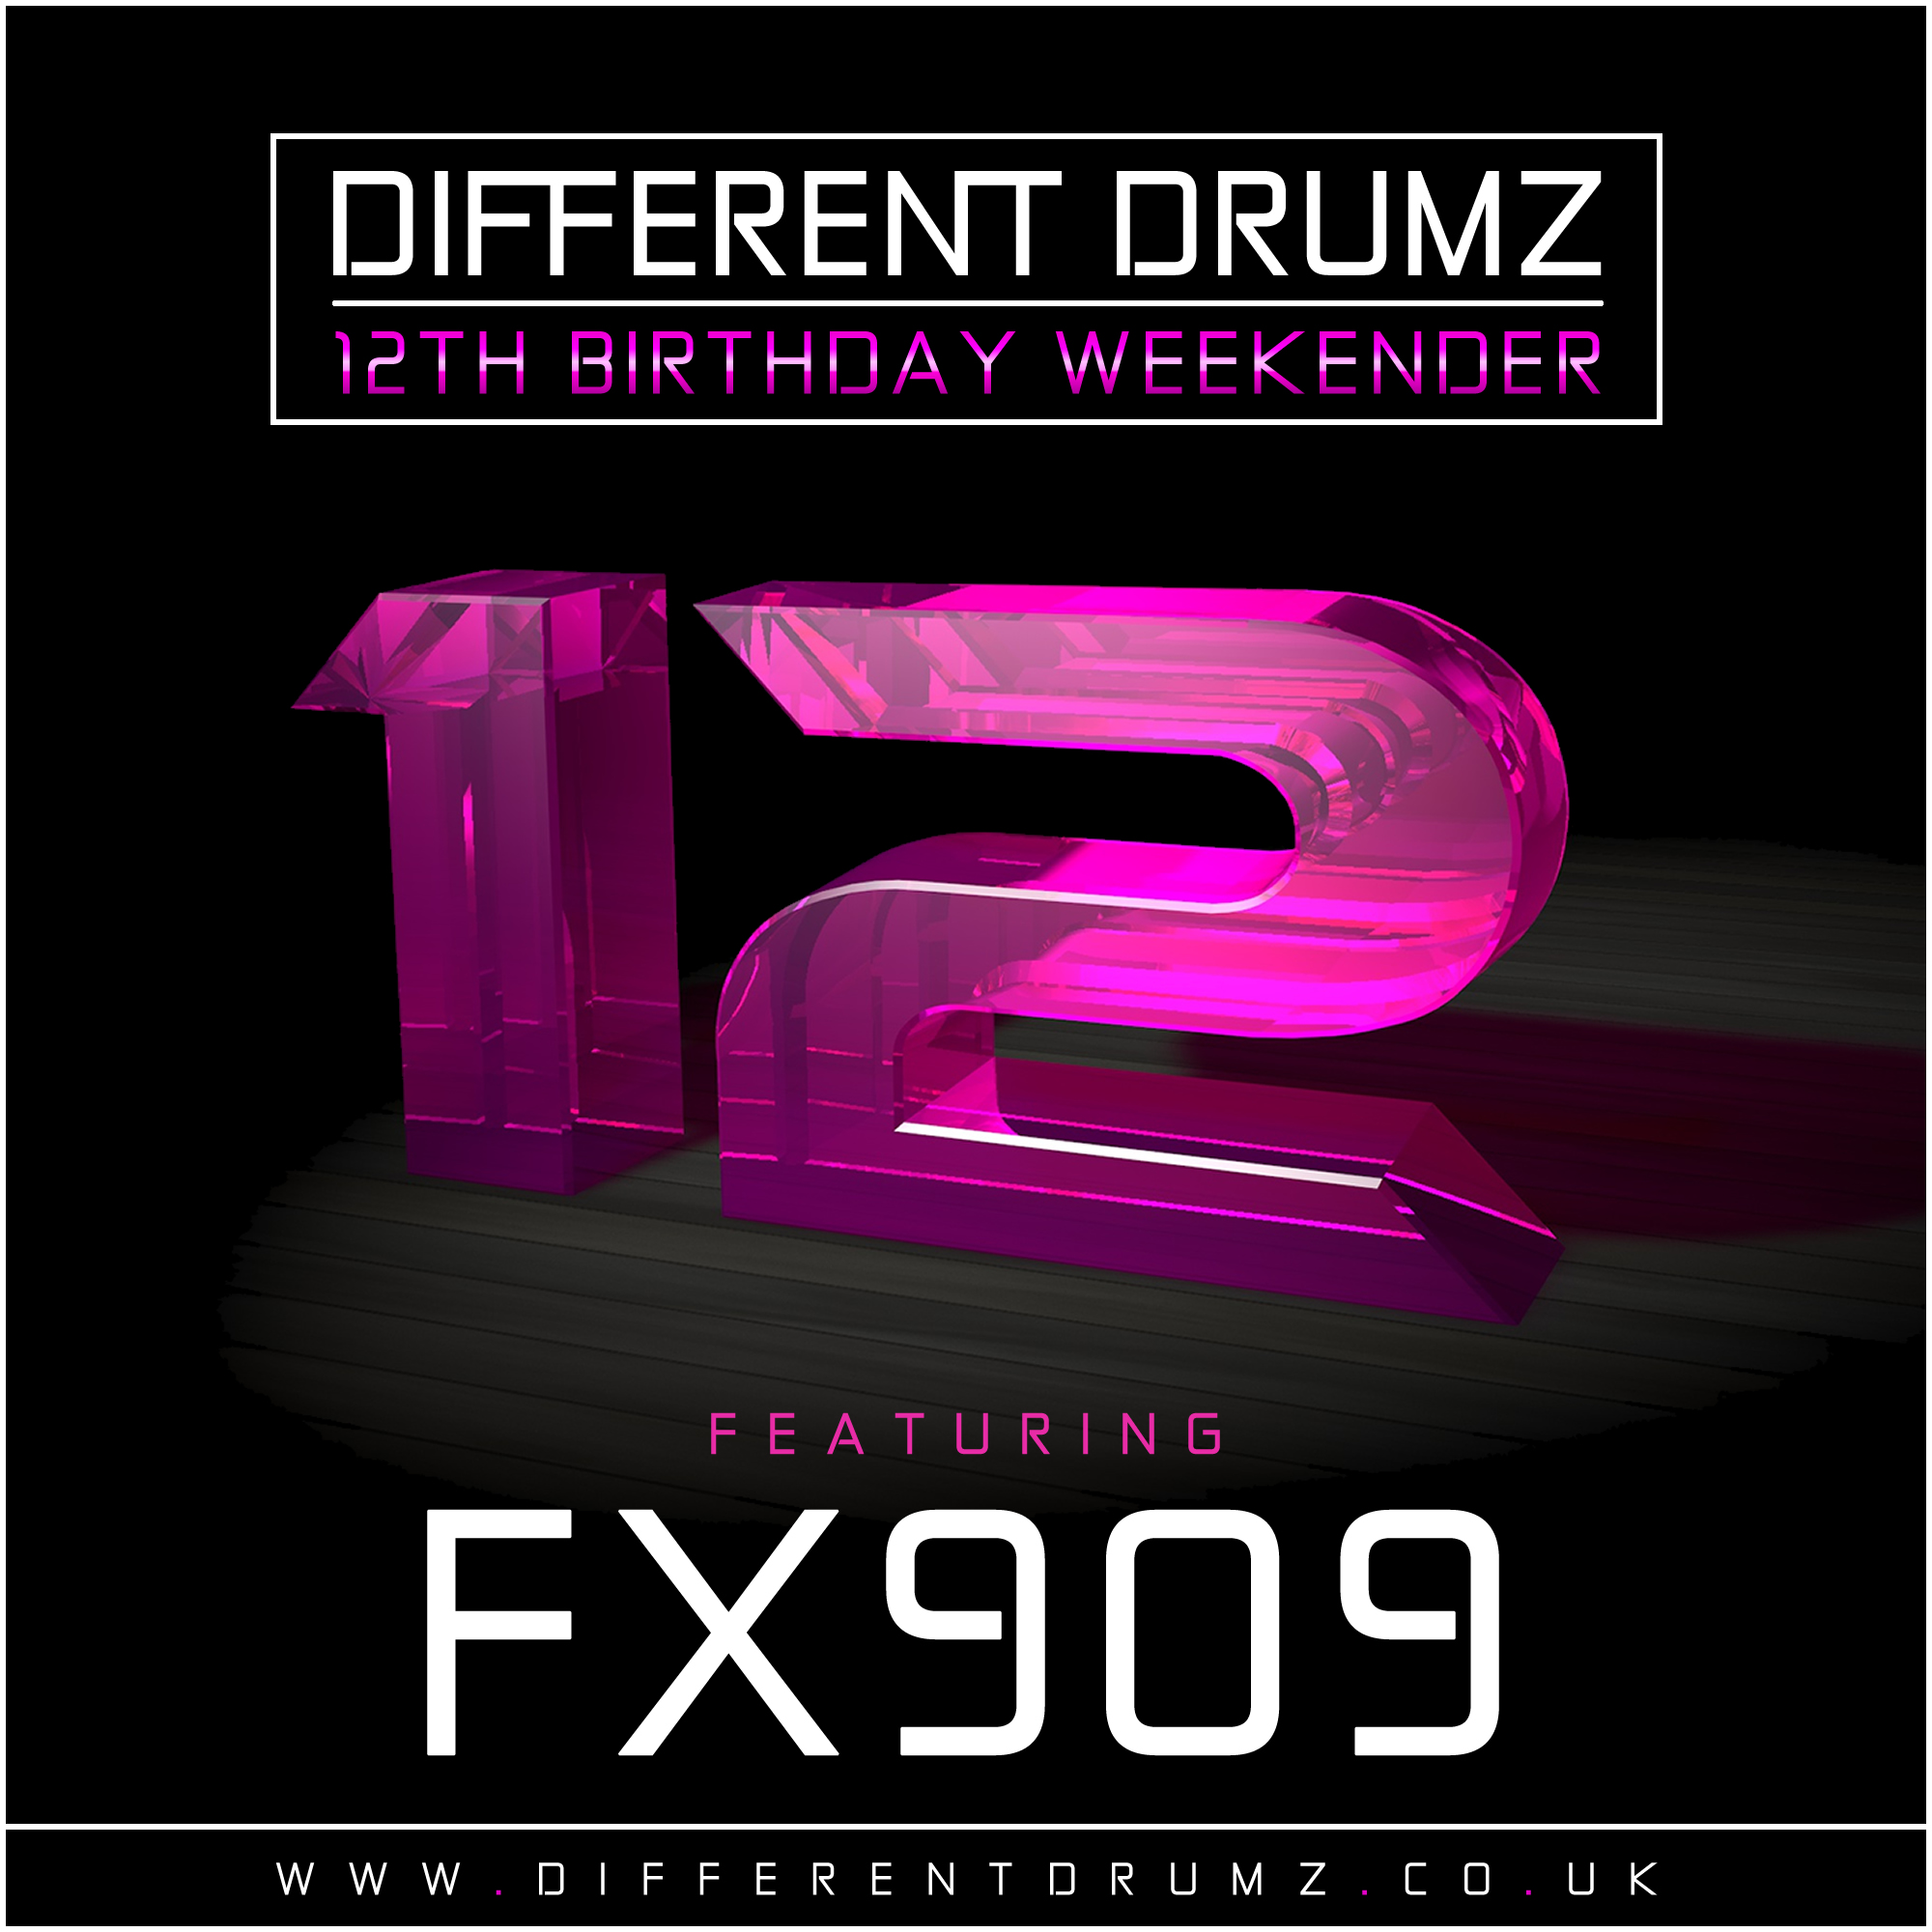 FX909 Different Drumz 12th Birthday Mix